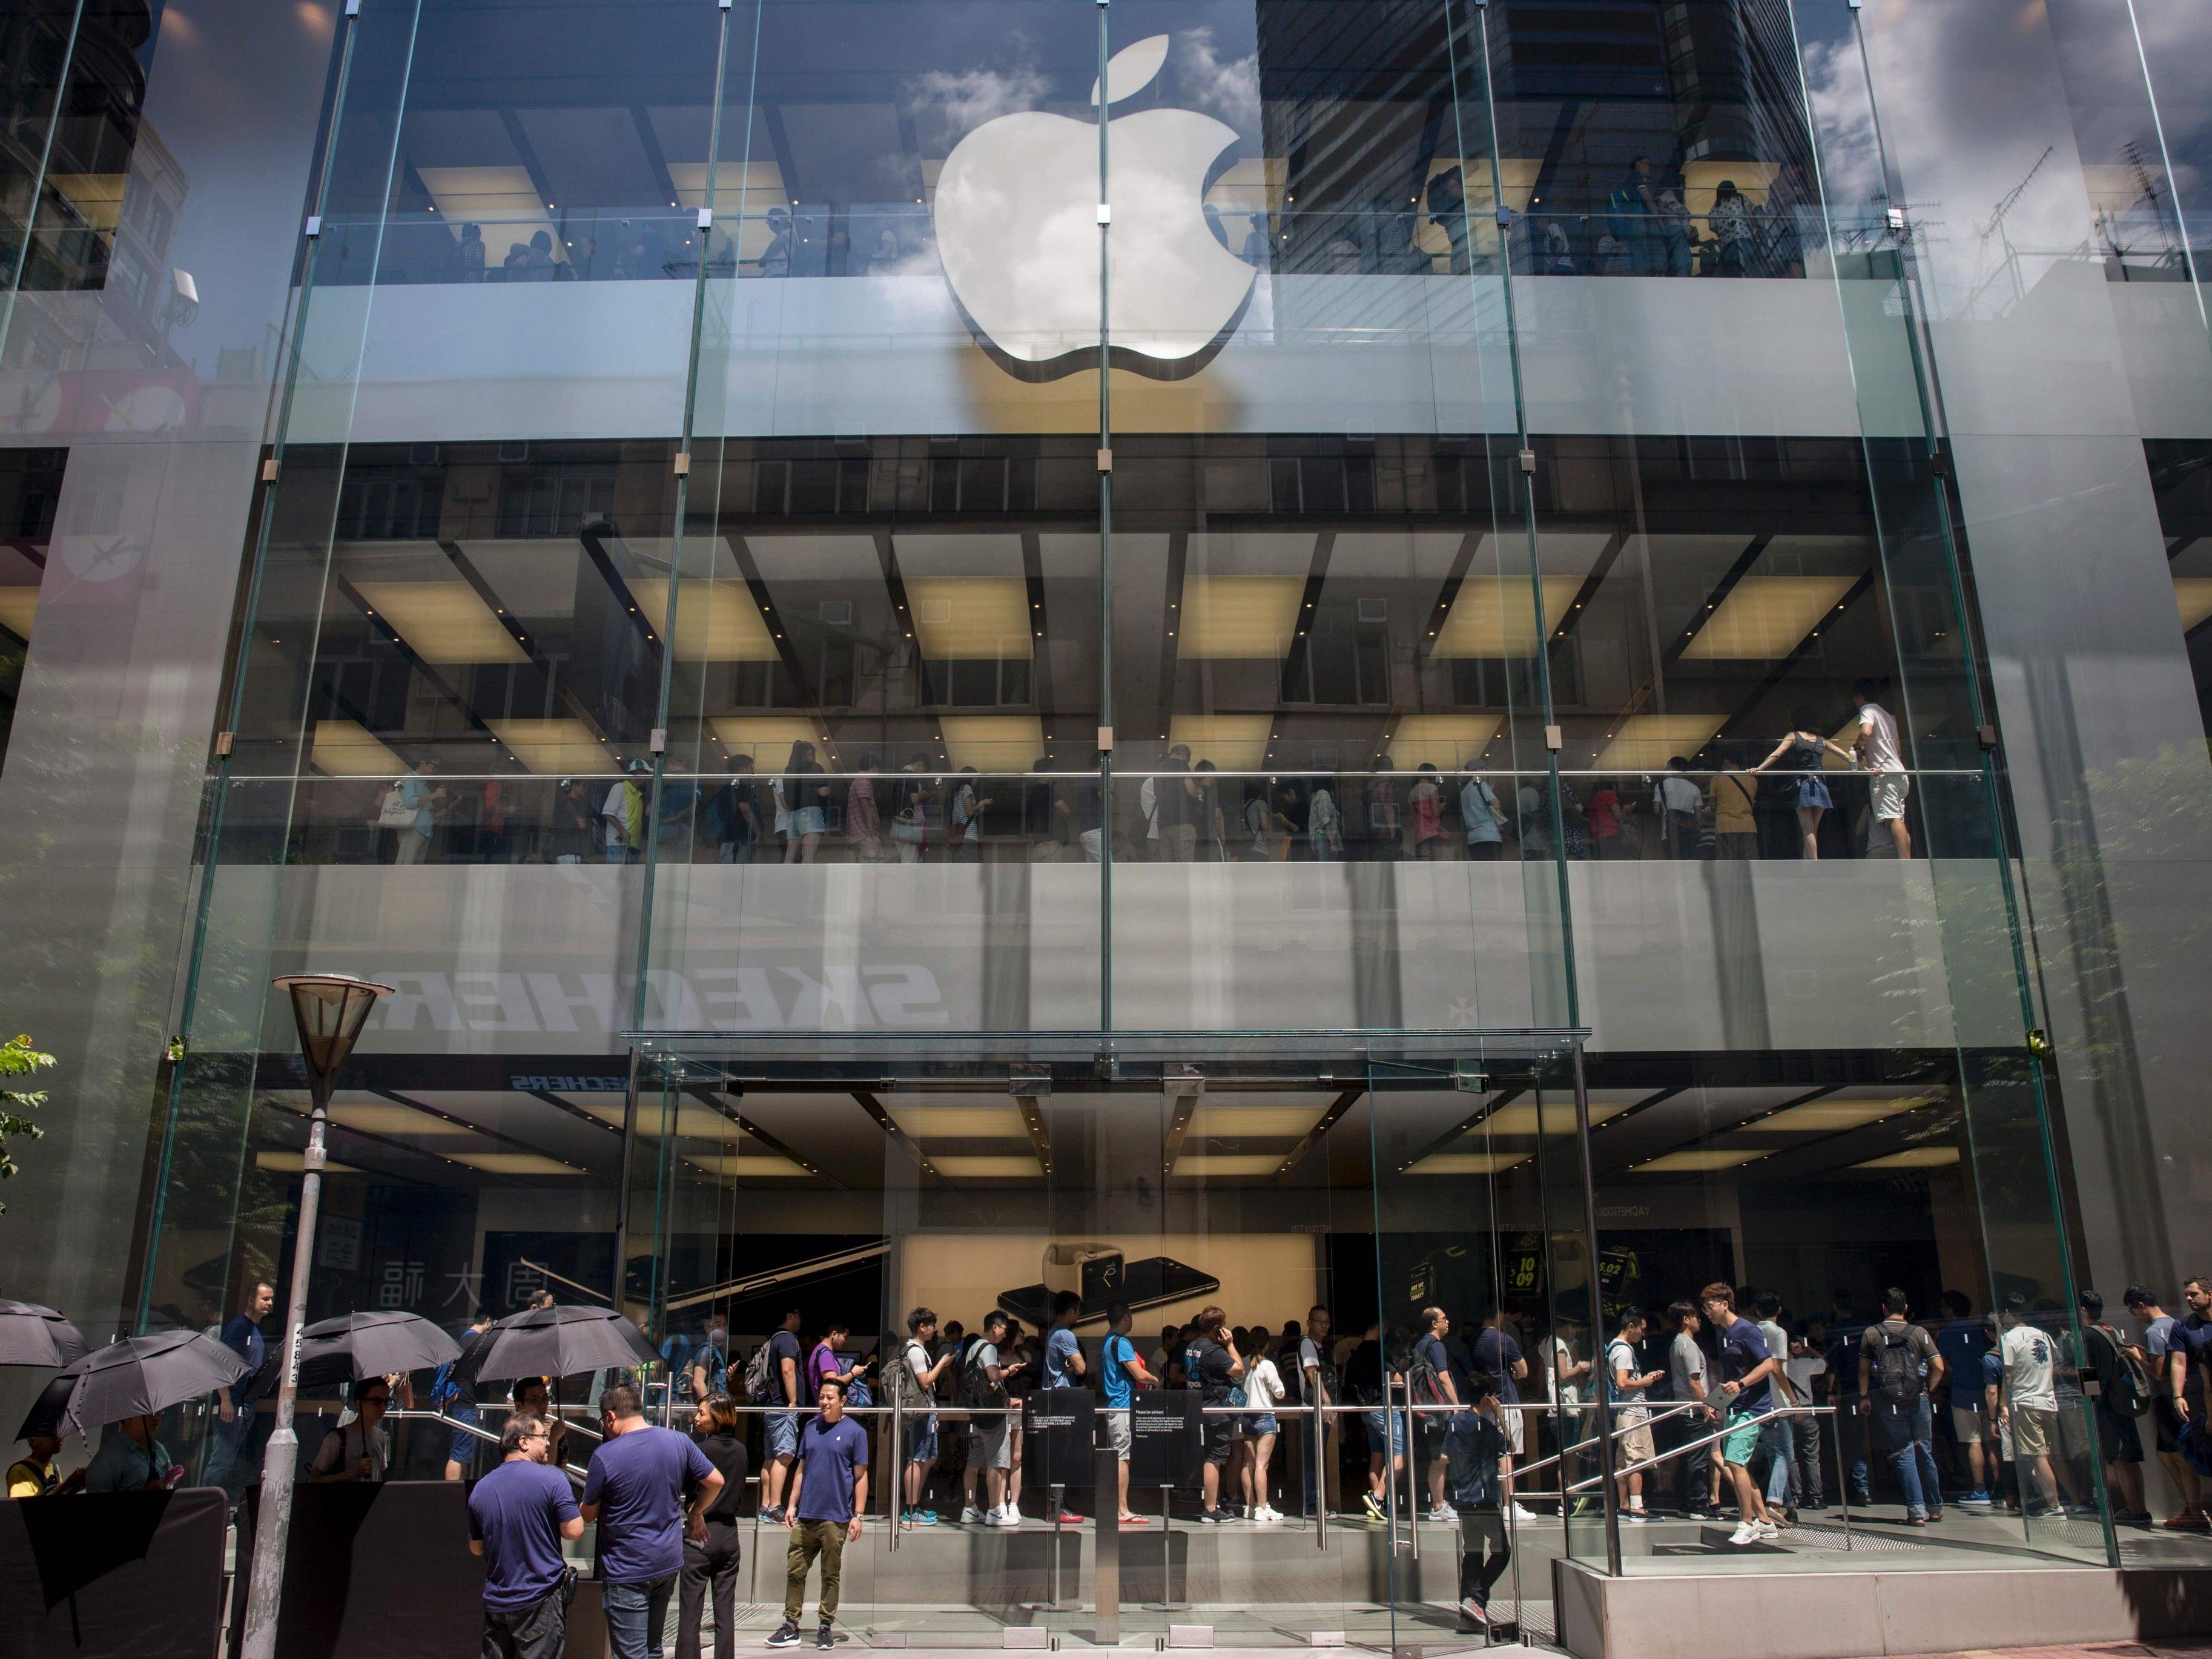 Am Erscheinungsdatum des Iphone 7 standen viele Menschen Schlange beim Apple Store in Hong Kong.